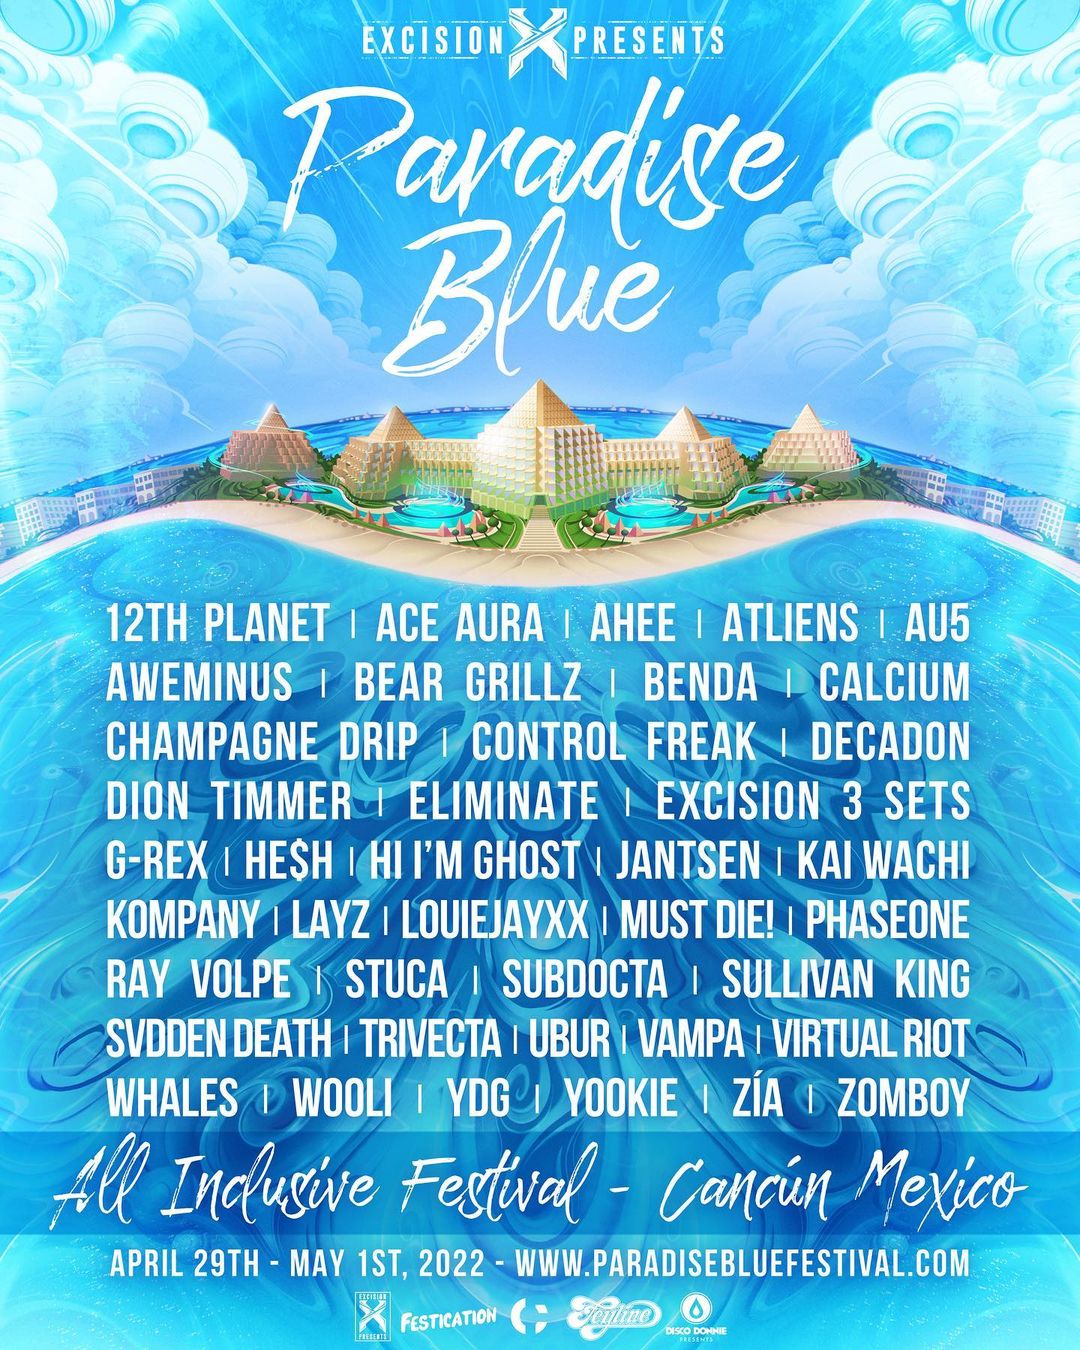 Excision Announces New Destination Festival, Paradise Blue Peace Music and Love